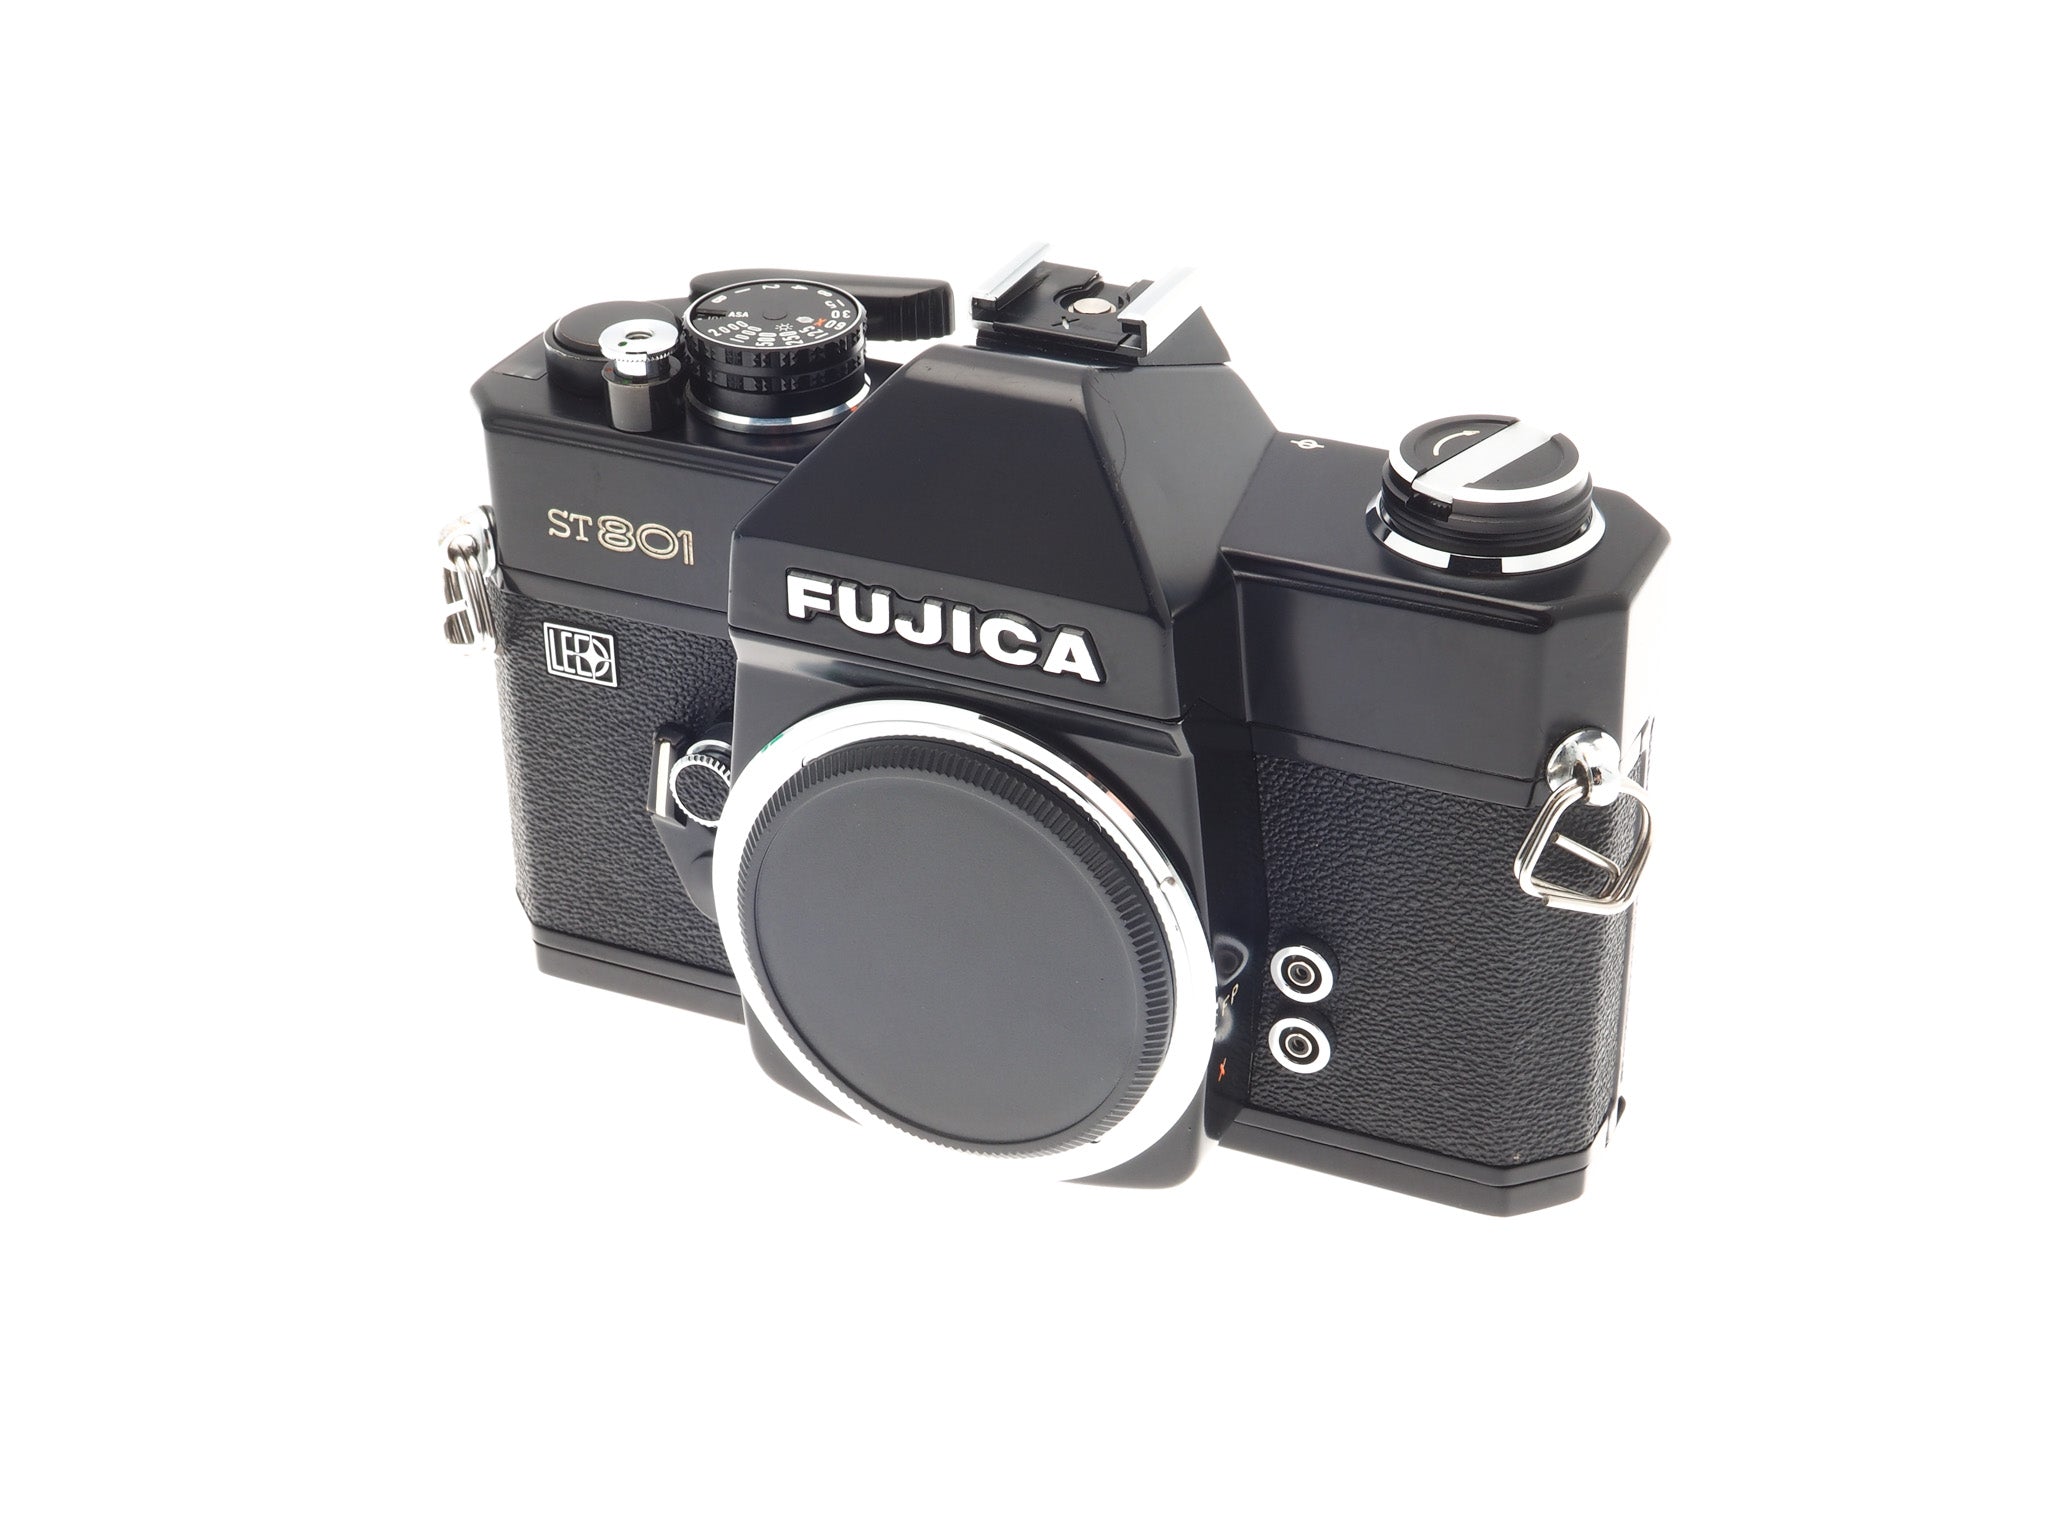 Fujica ST801 - Camera